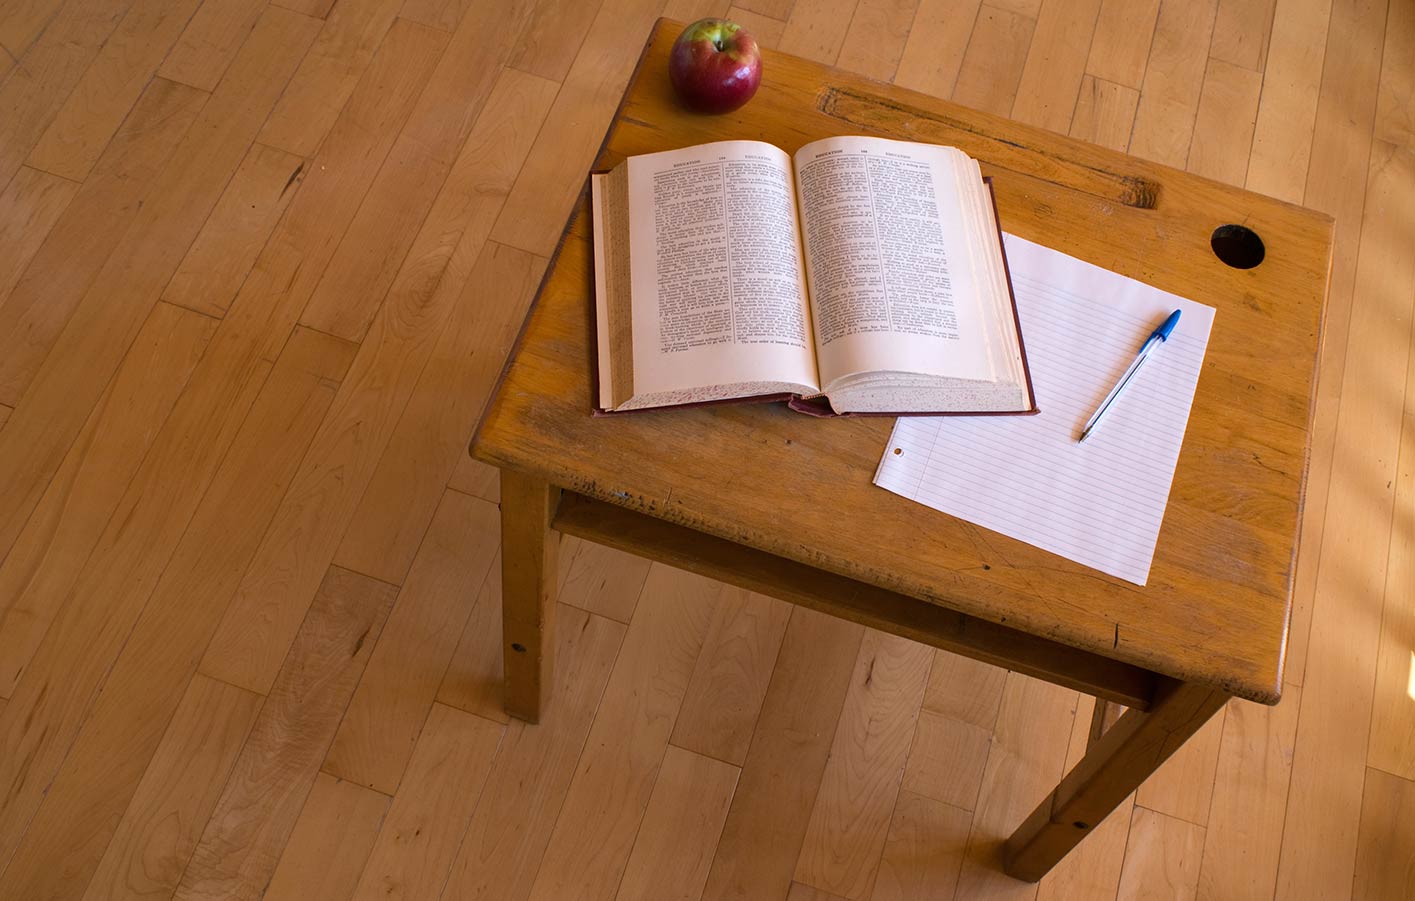 Holztisch auf einem Parkettboden mit einem Buch und Notizzettel darauf